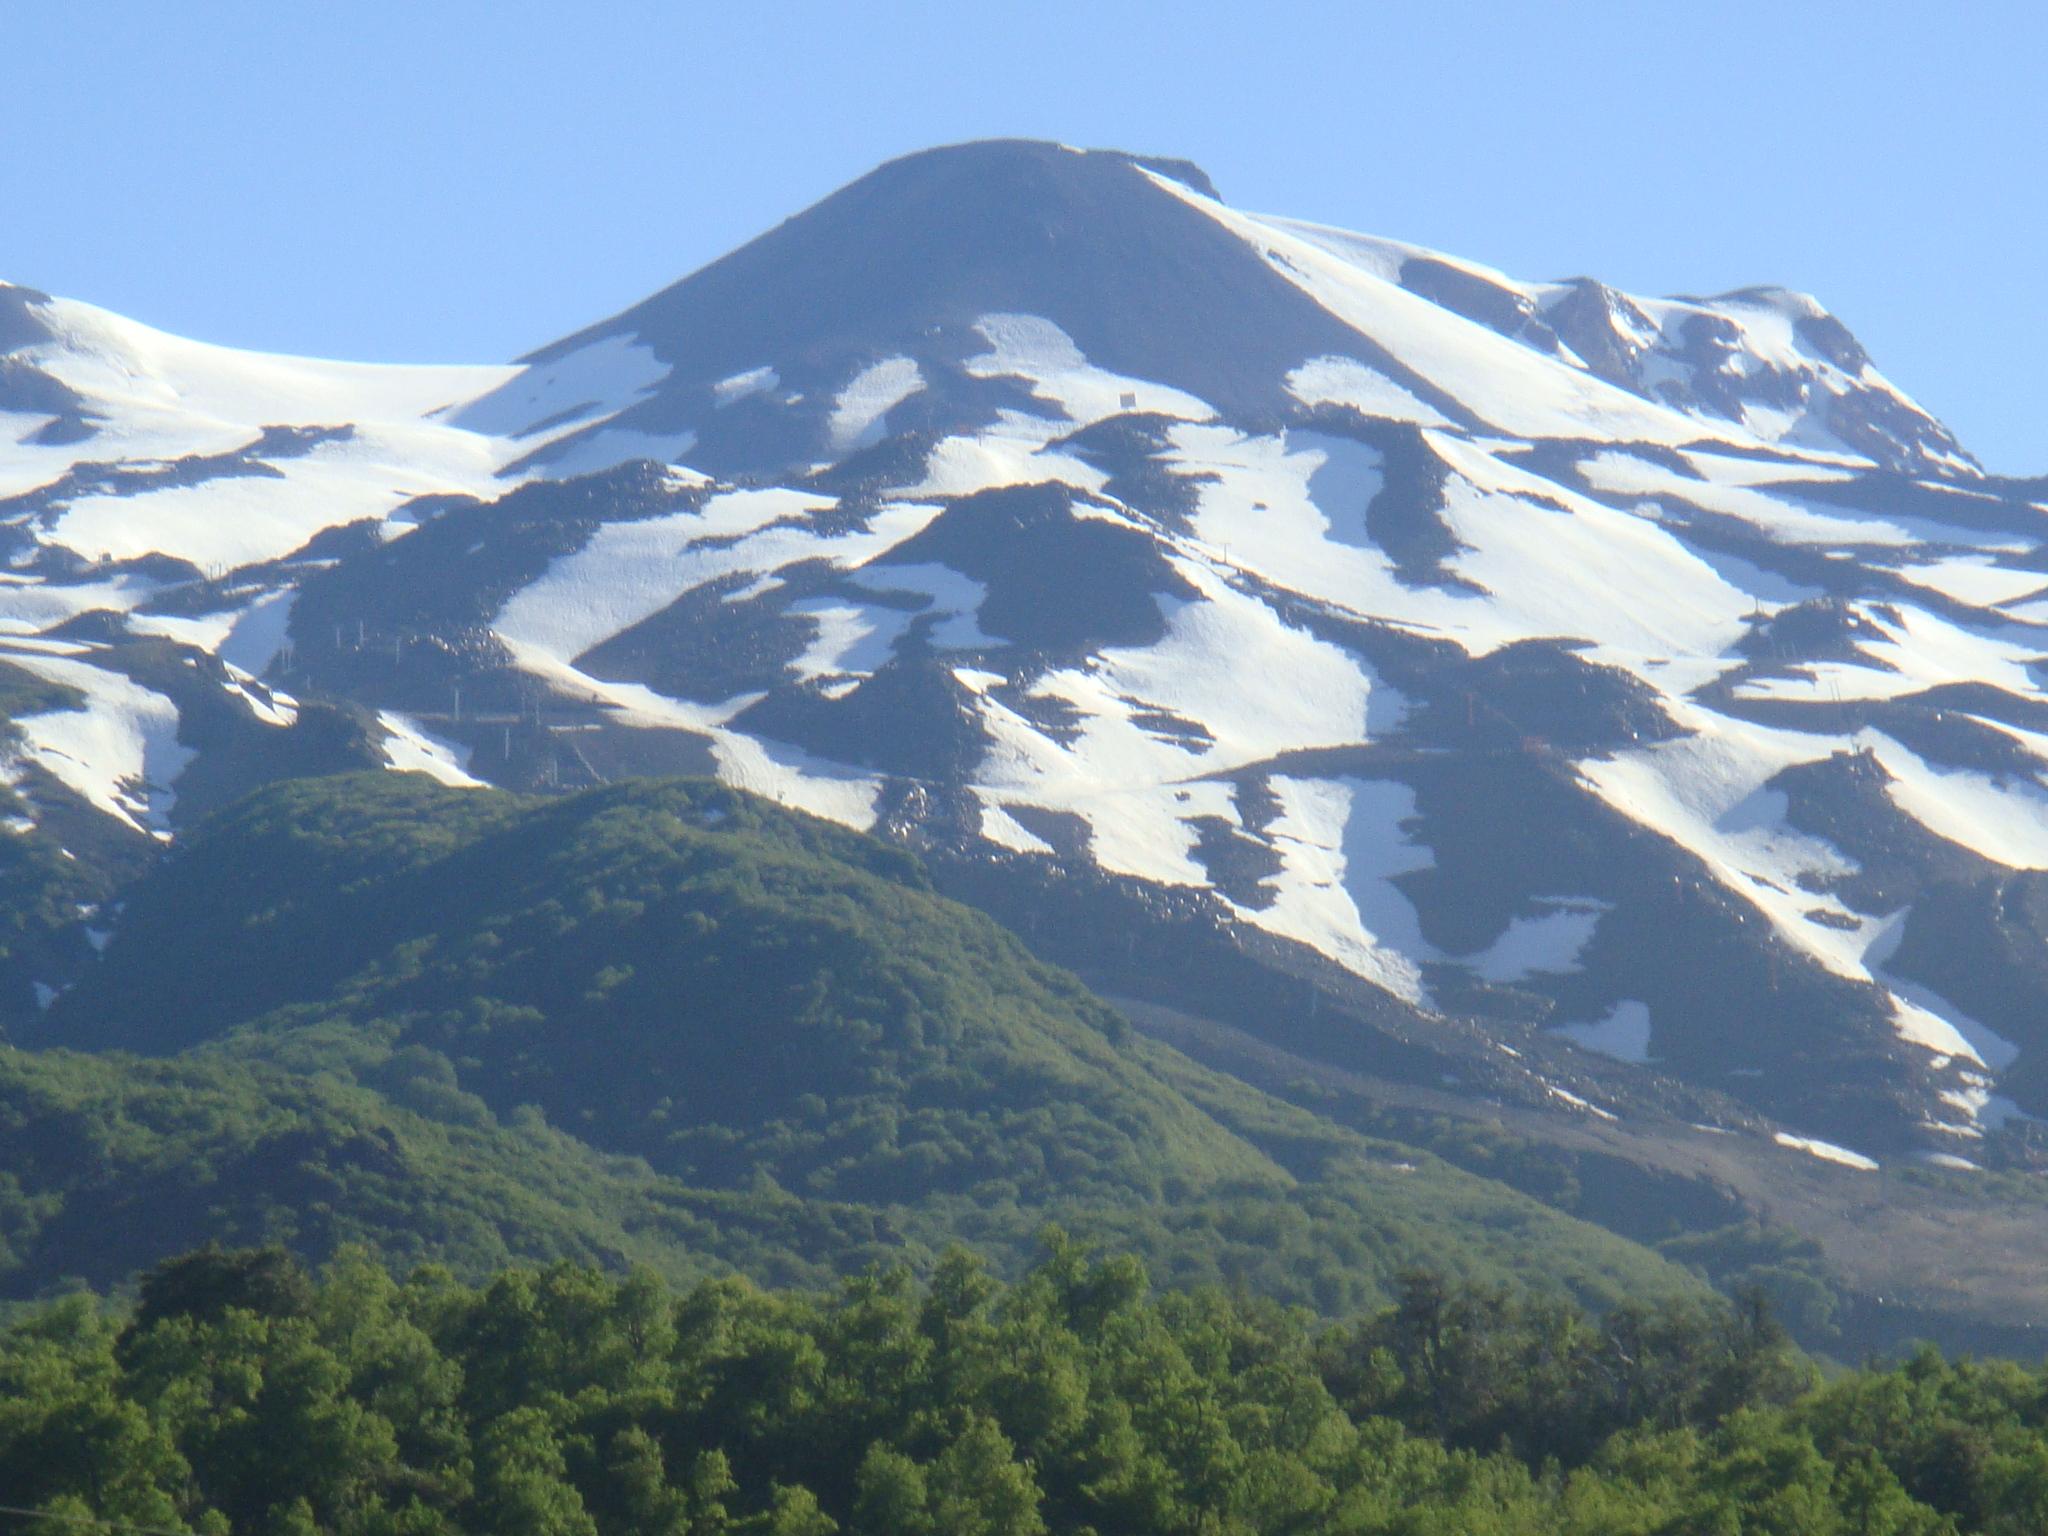  Volcán Chillán (Chile) y sus bosques de Nothofagus                              